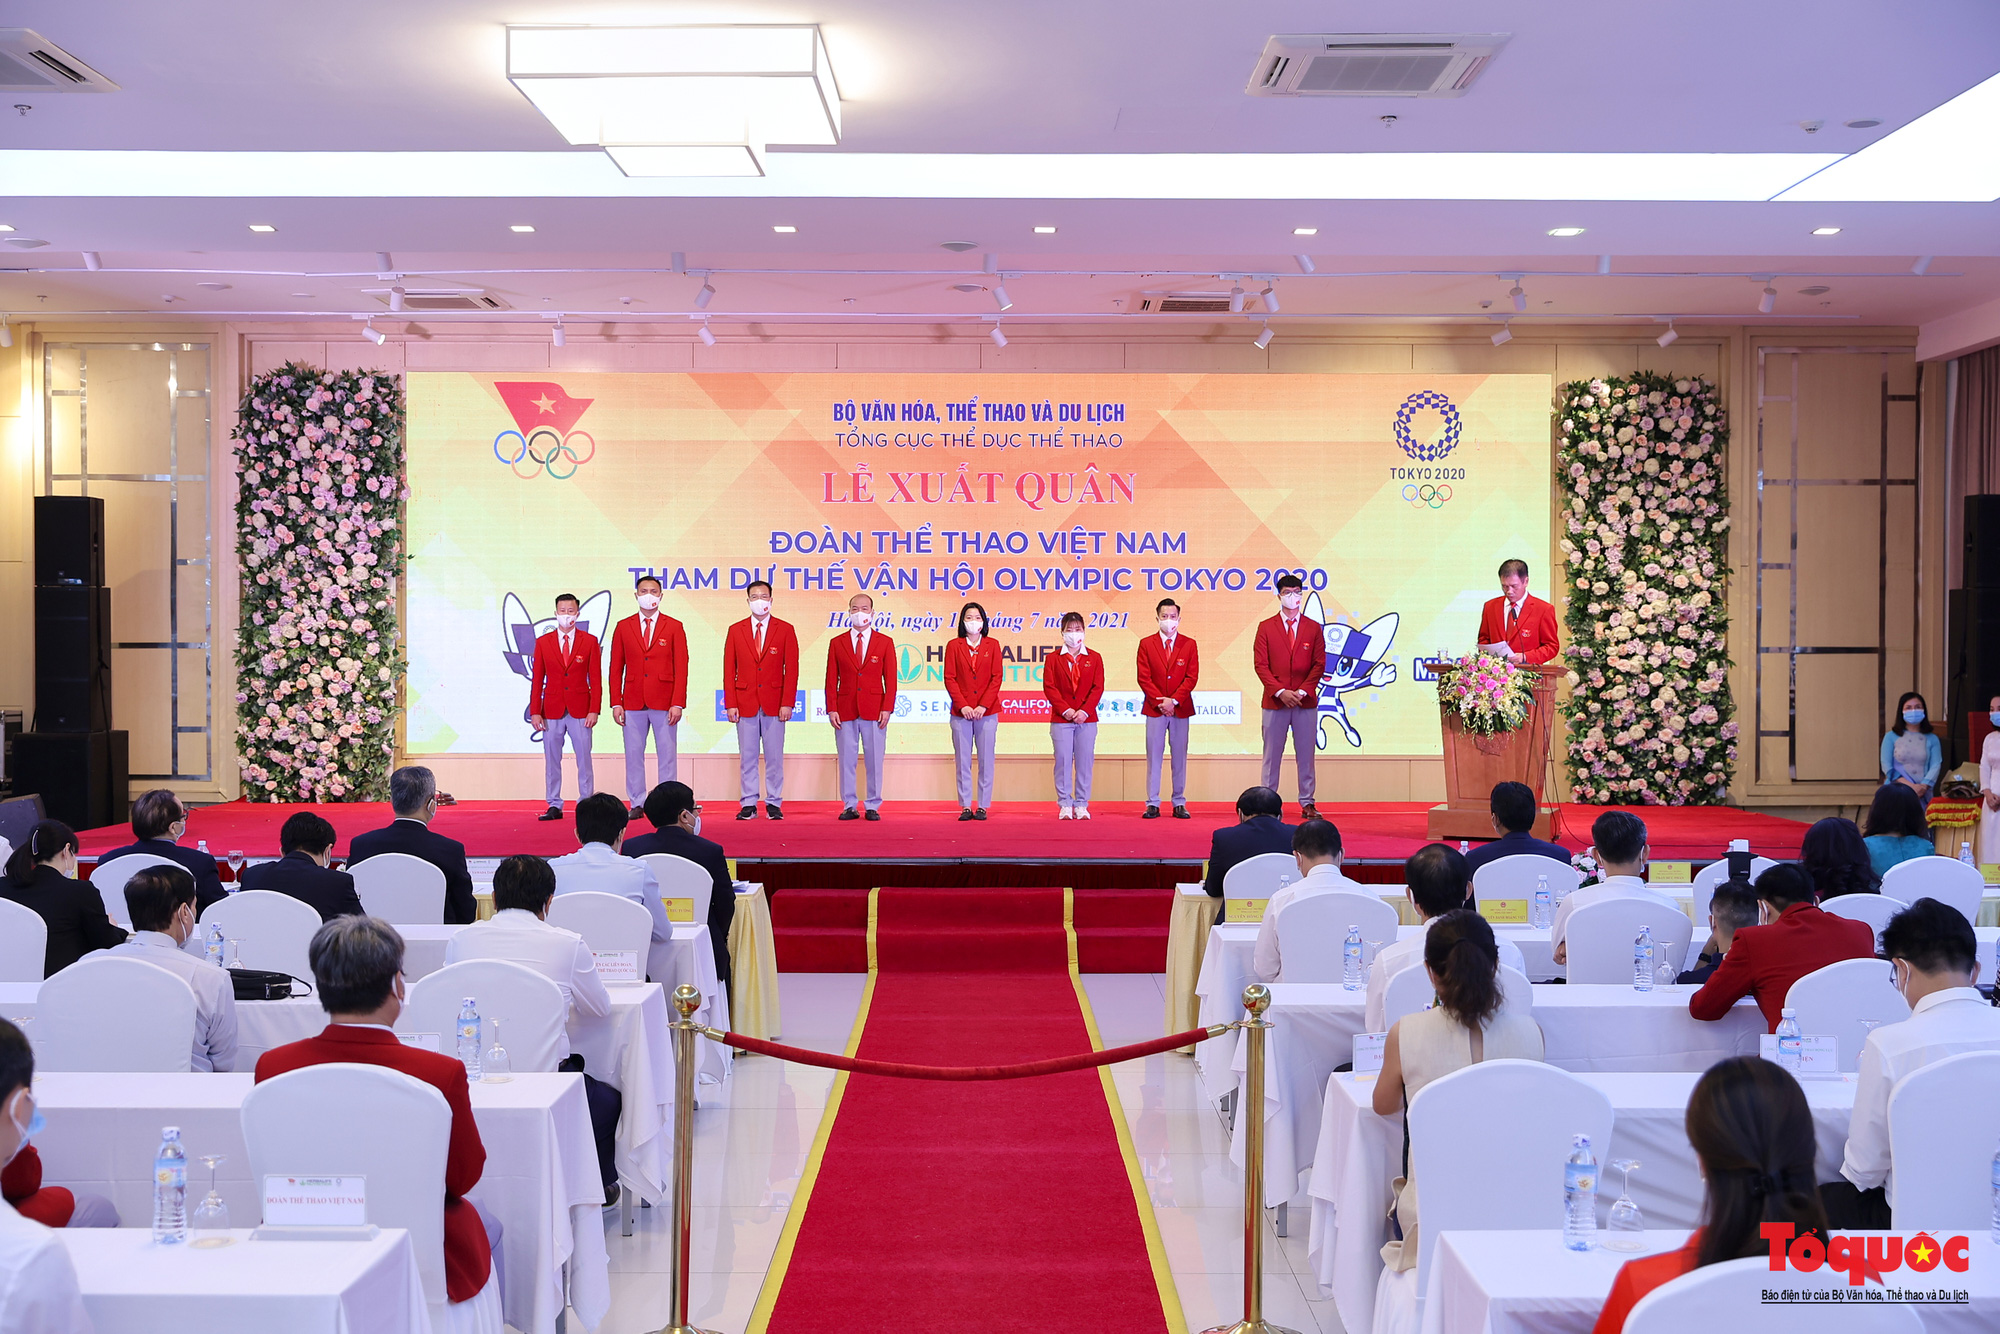 [Chùm ảnh] Lễ xuất quân Đoàn Thể thao Việt Nam tham dự Thế vận hội Olympic lần thứ XXXII - Ảnh 1.